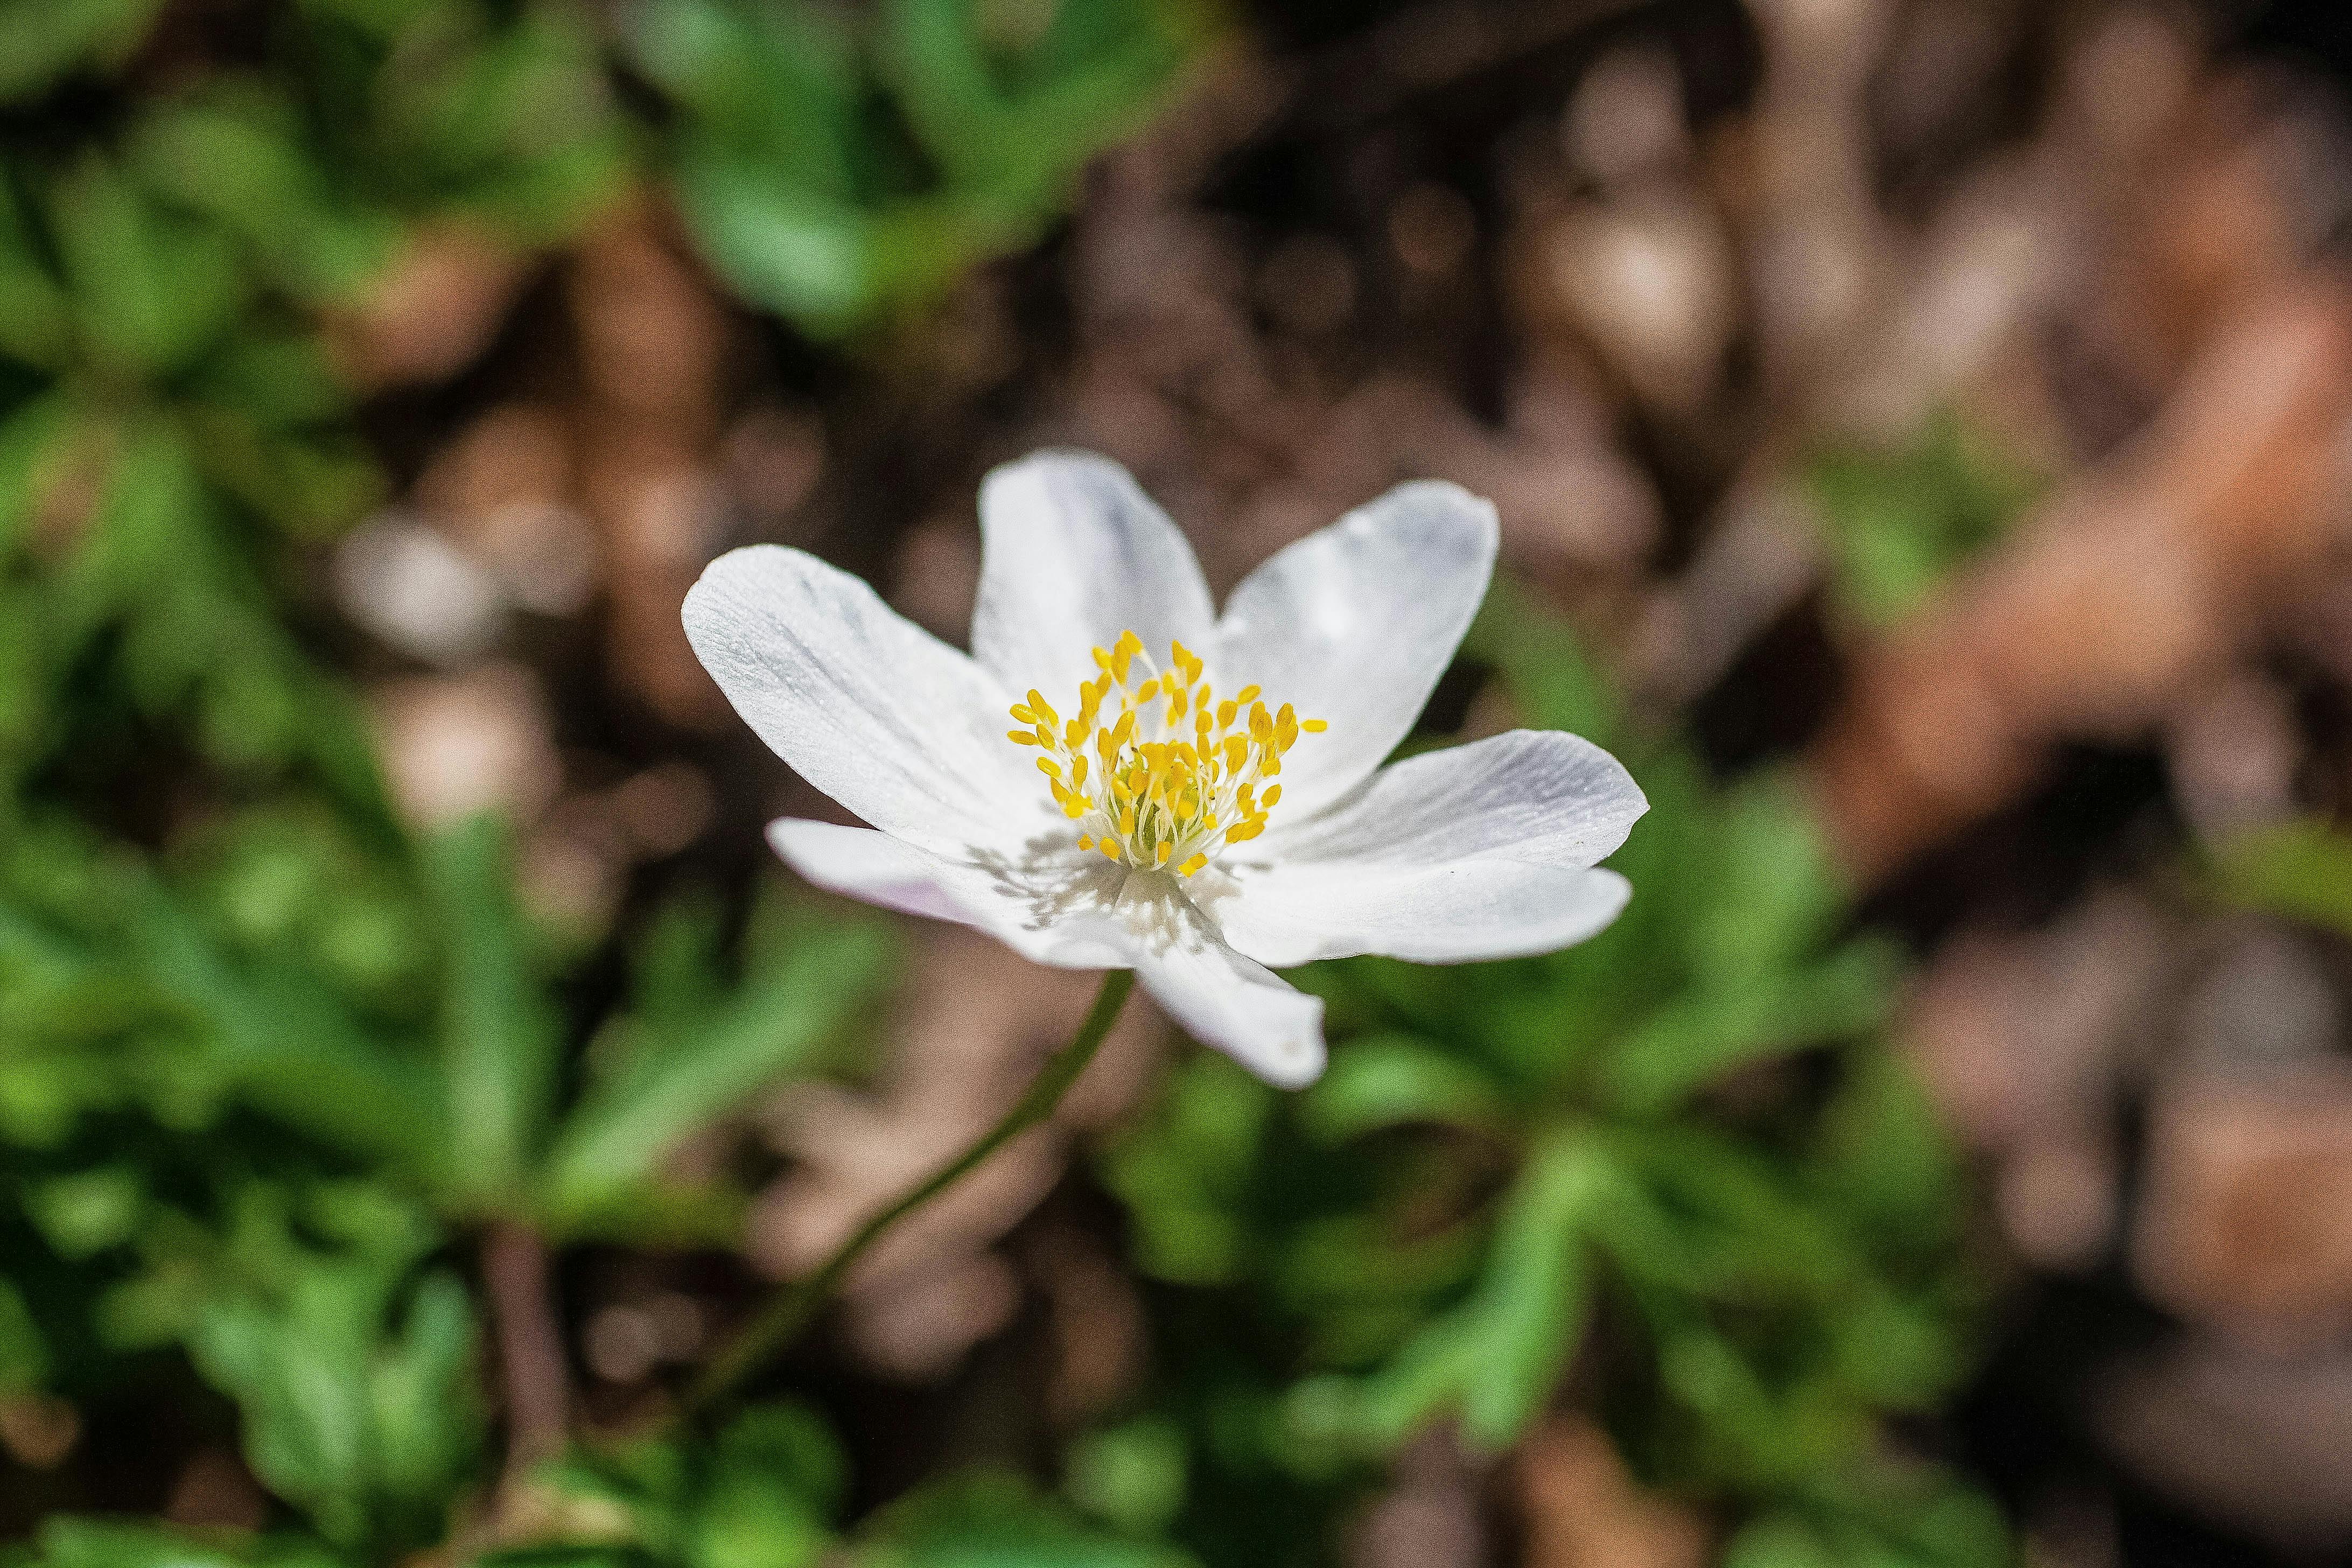 A Beautiful Wood Anemone Flower · Free Stock Photo